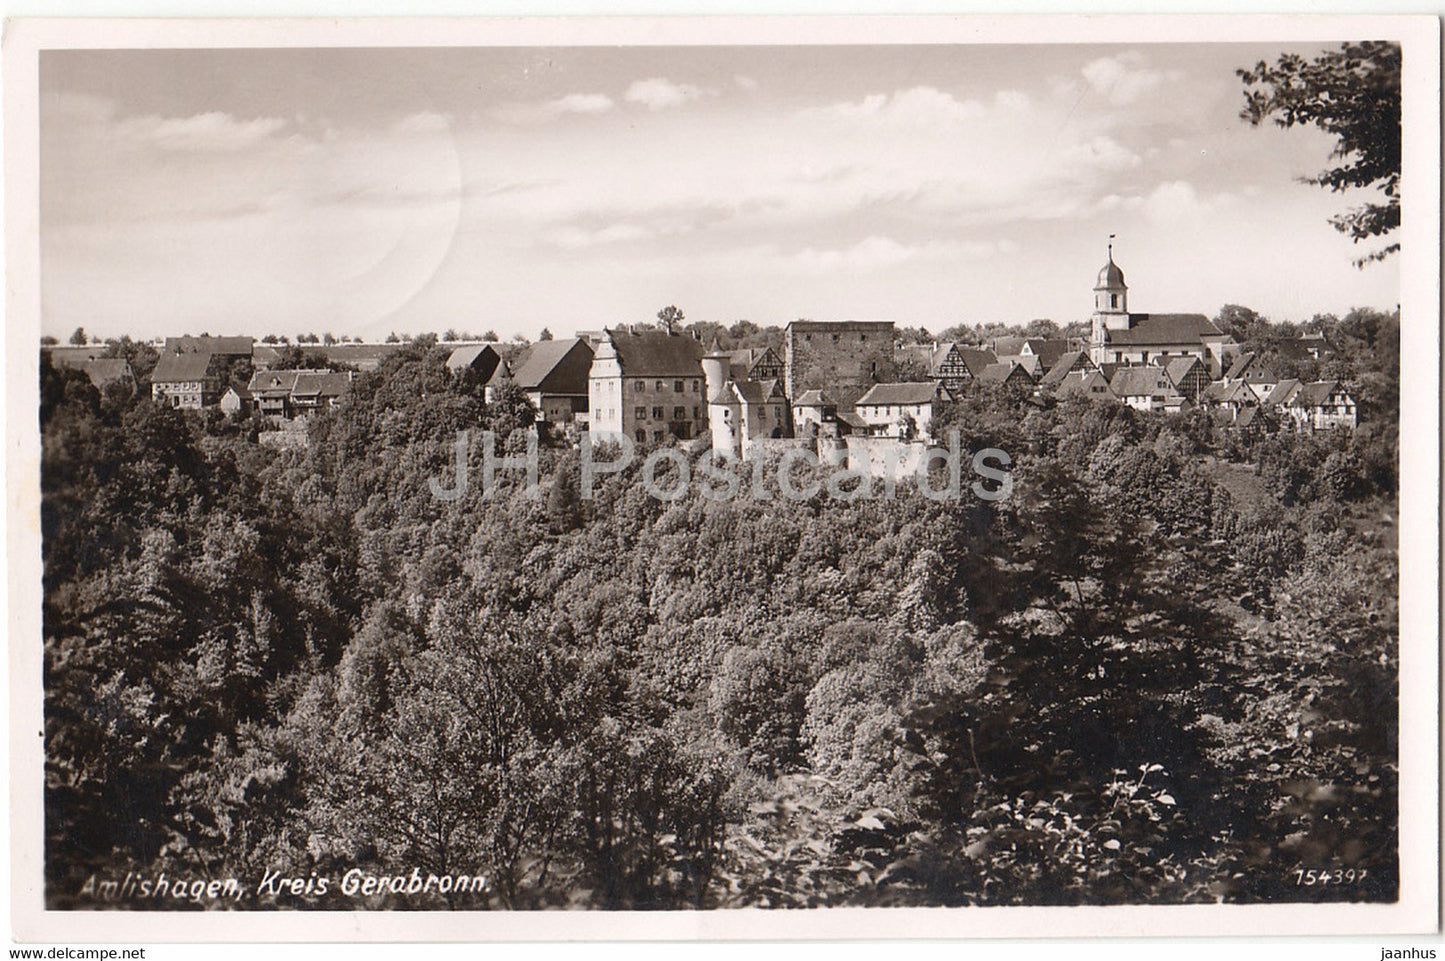 Amlishagen - Kreis Gerabronn - 154397 - old postcard - 1958 - Germany - used - JH Postcards